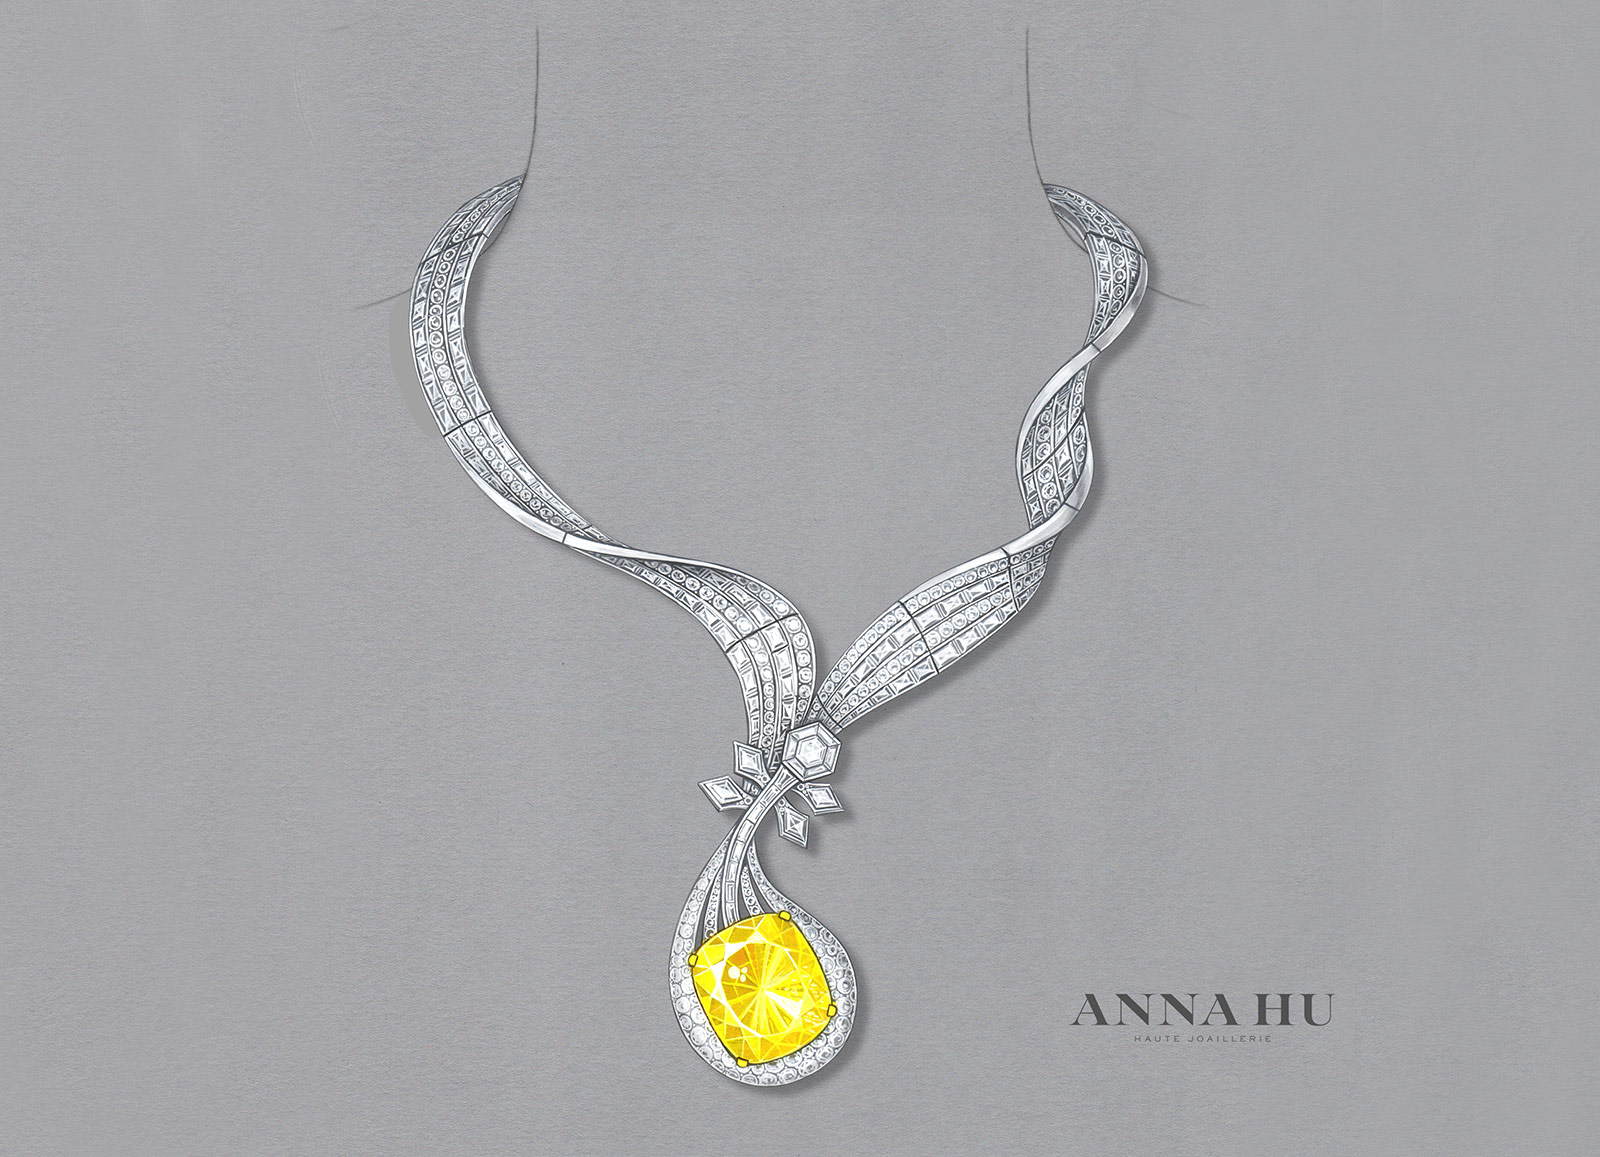 Эскиз колье Anna Hu 'Dunhuang Pipa' из белого и желтого золота с желтым бриллиантом 100.02ct и бесцветными бриллиантами